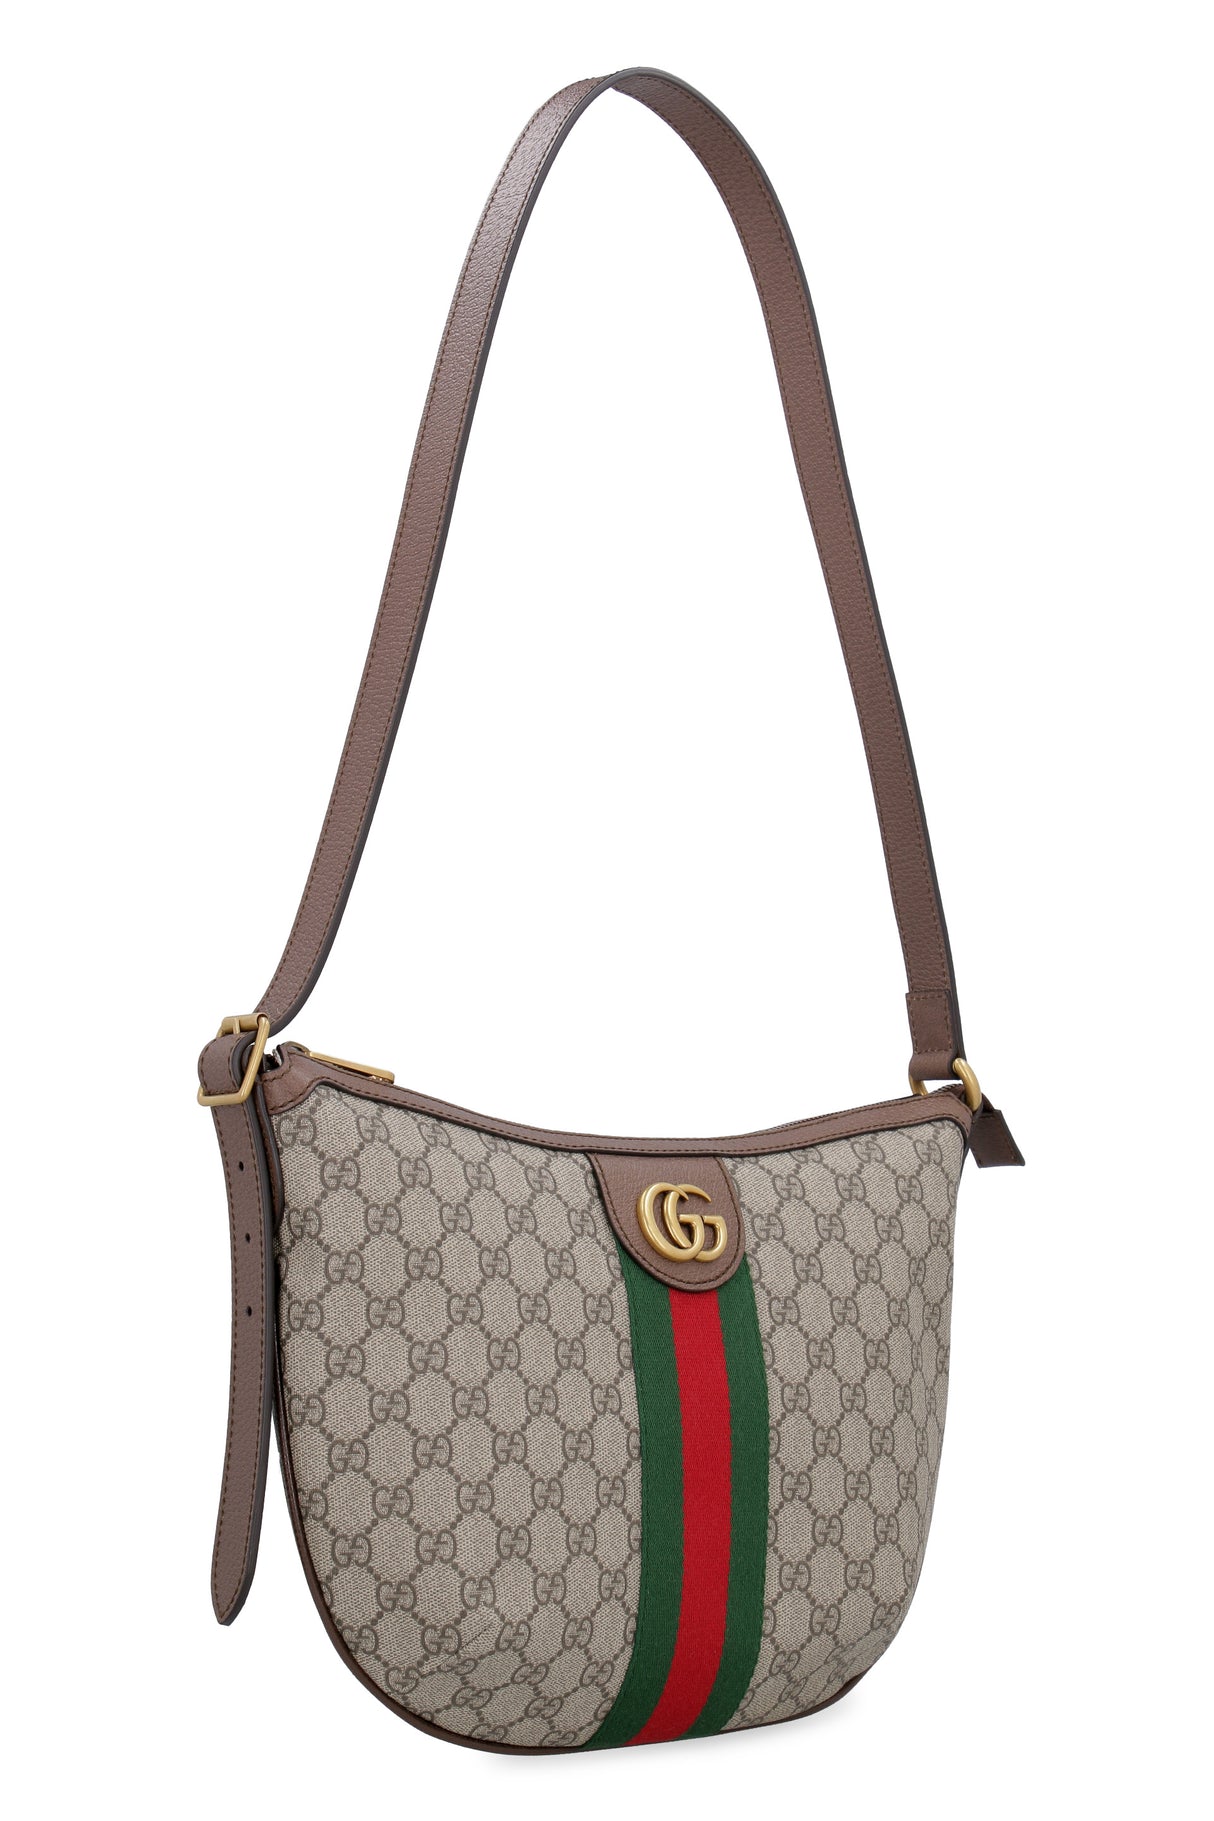 GUCCI Beige GG Supreme Shoulder Handbag - Women's Fashion Carryover Bag 2024